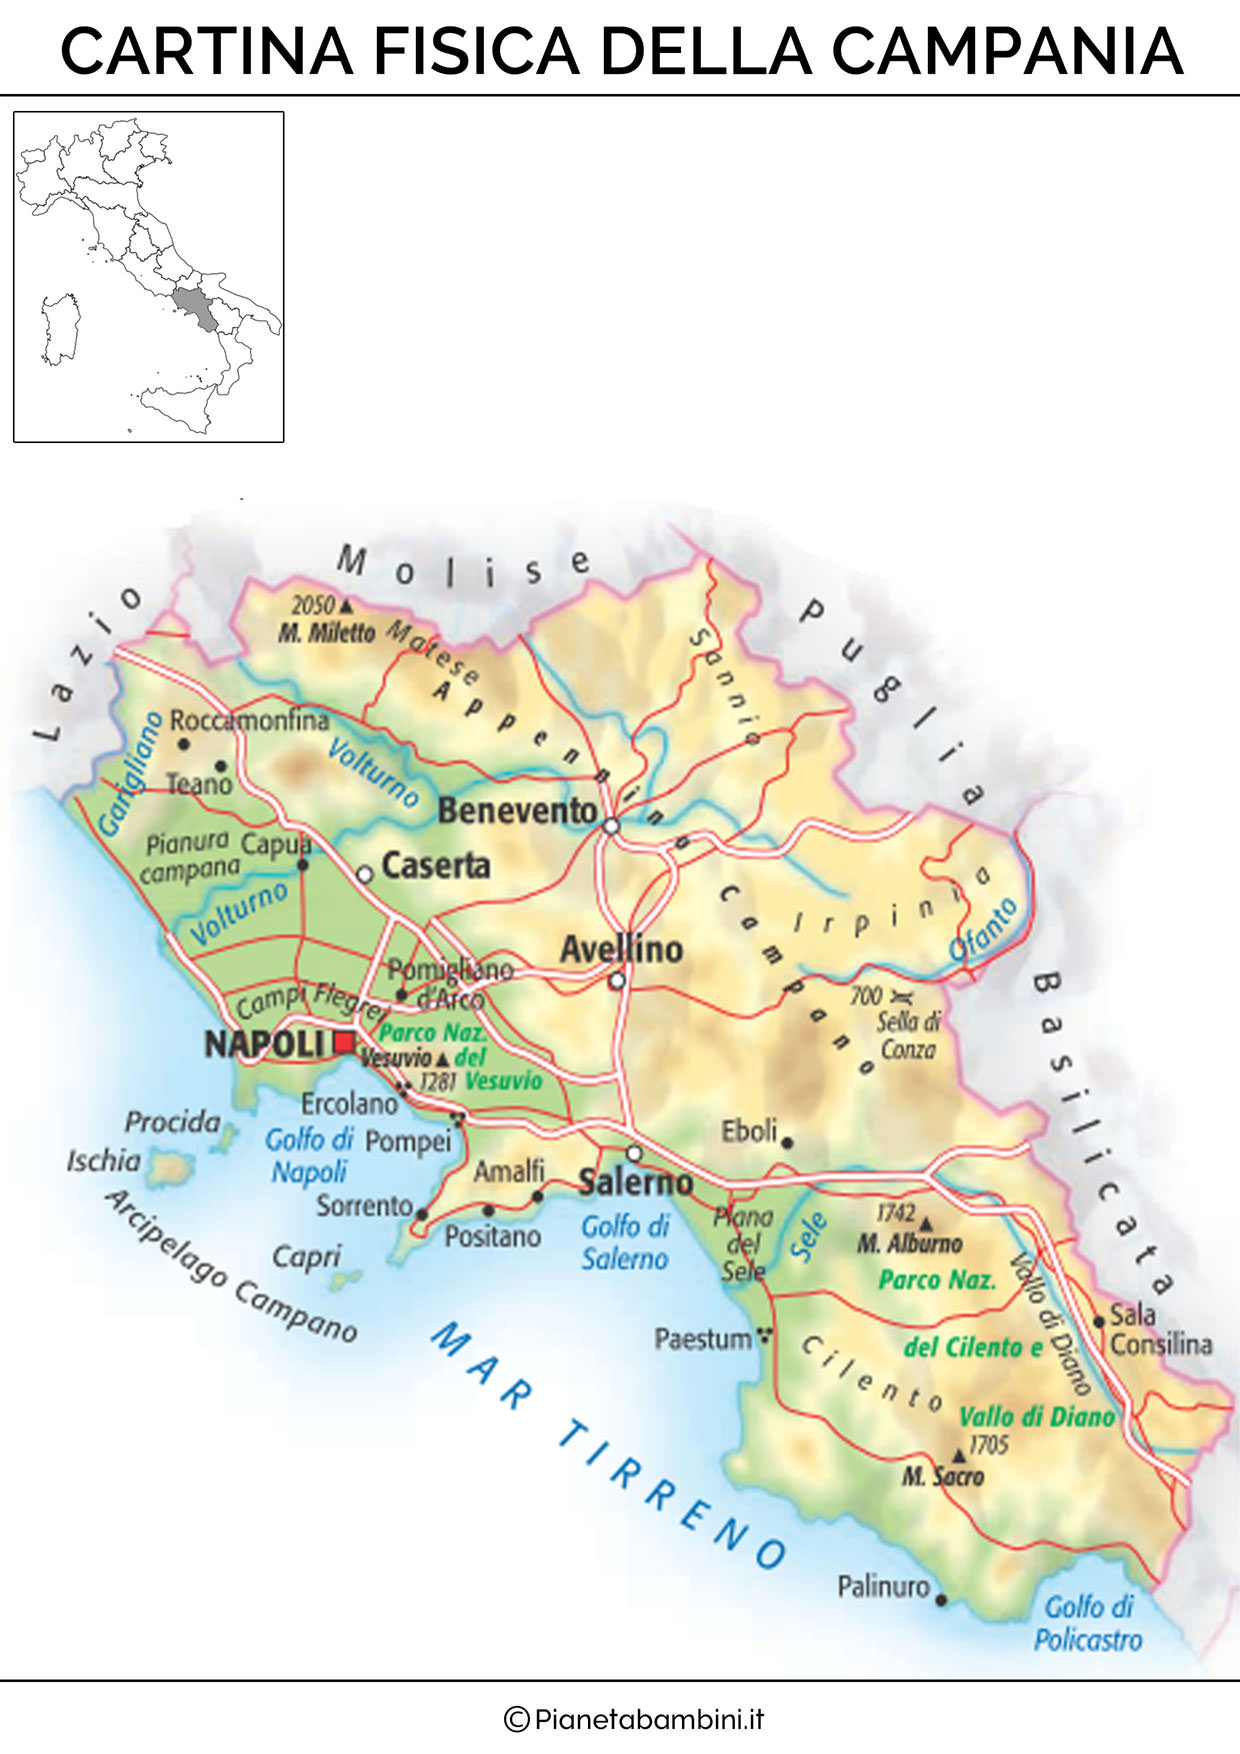 Cartina della Campania in versione fisica